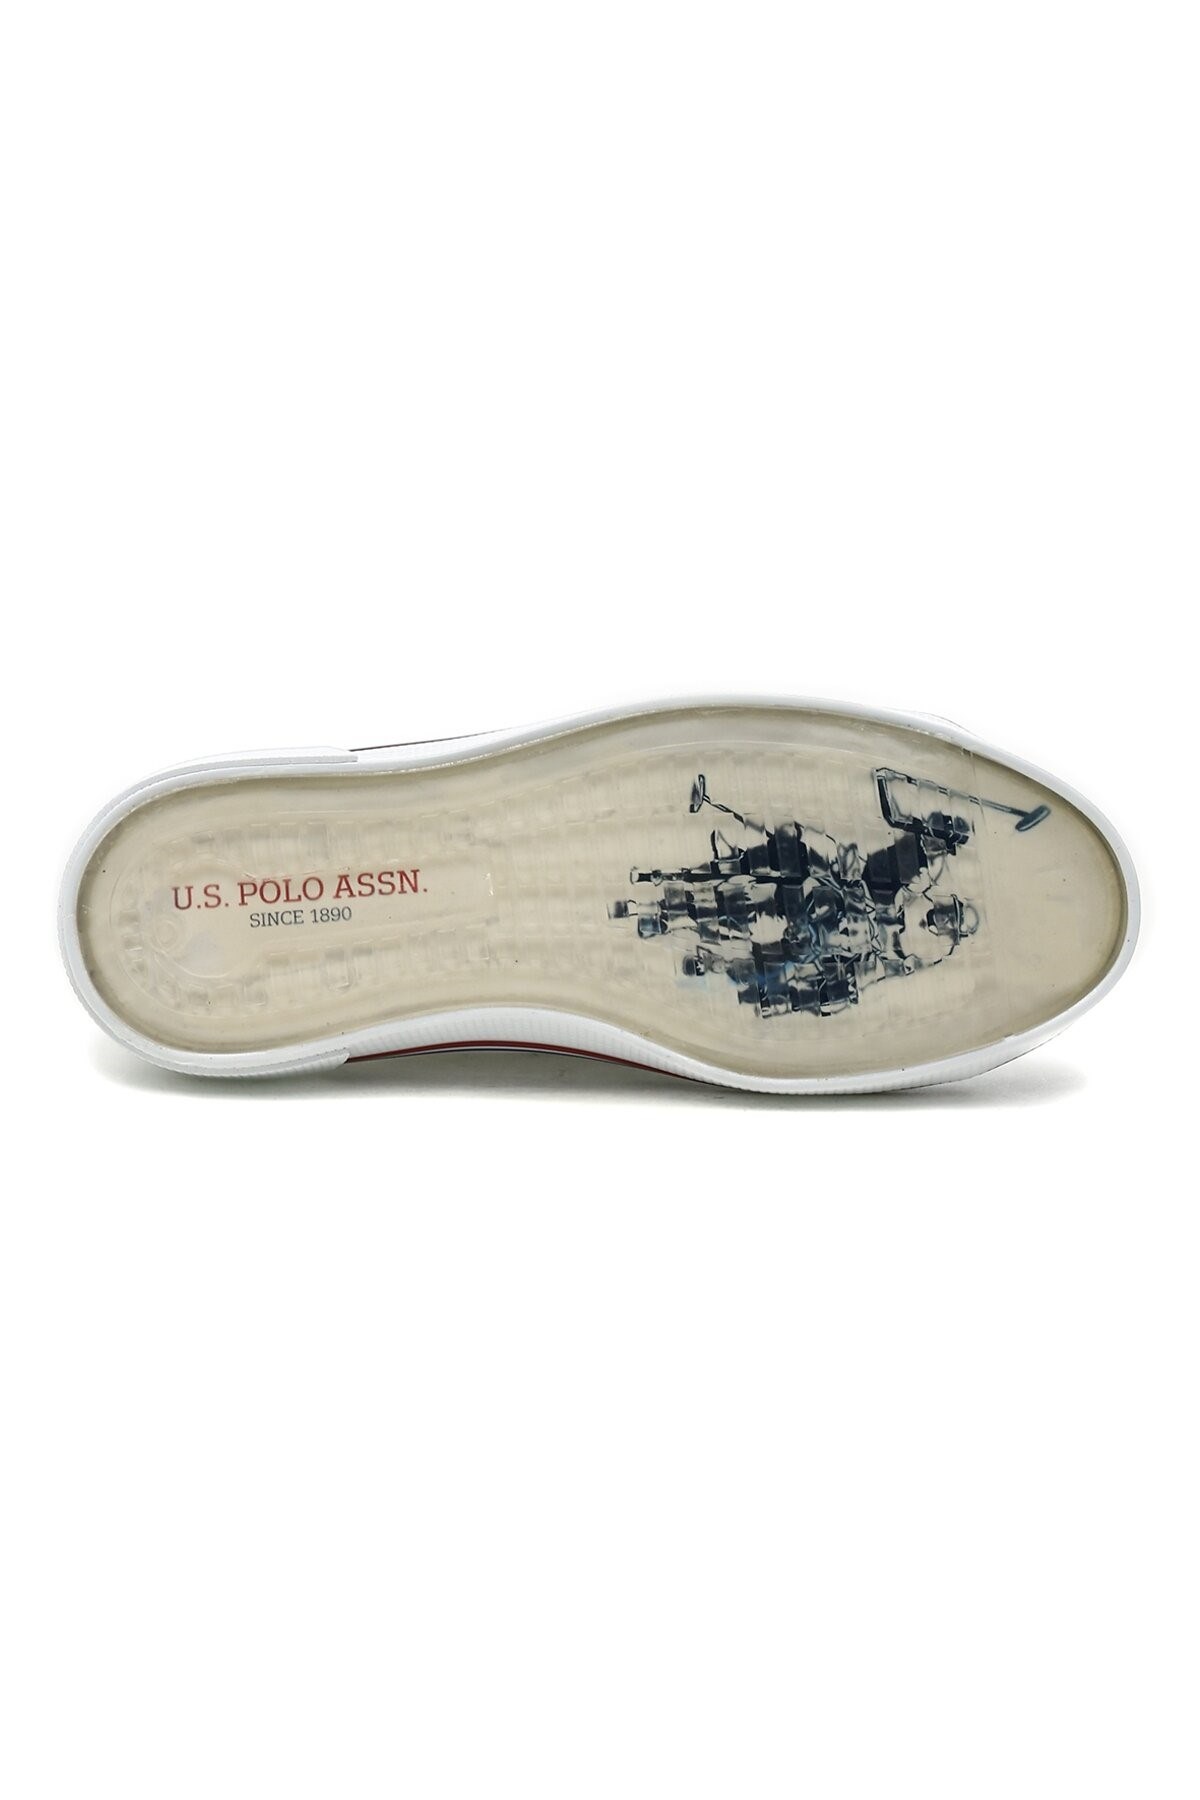 U.S Polo Kadın Ayakkabı 101049949 Beyaz